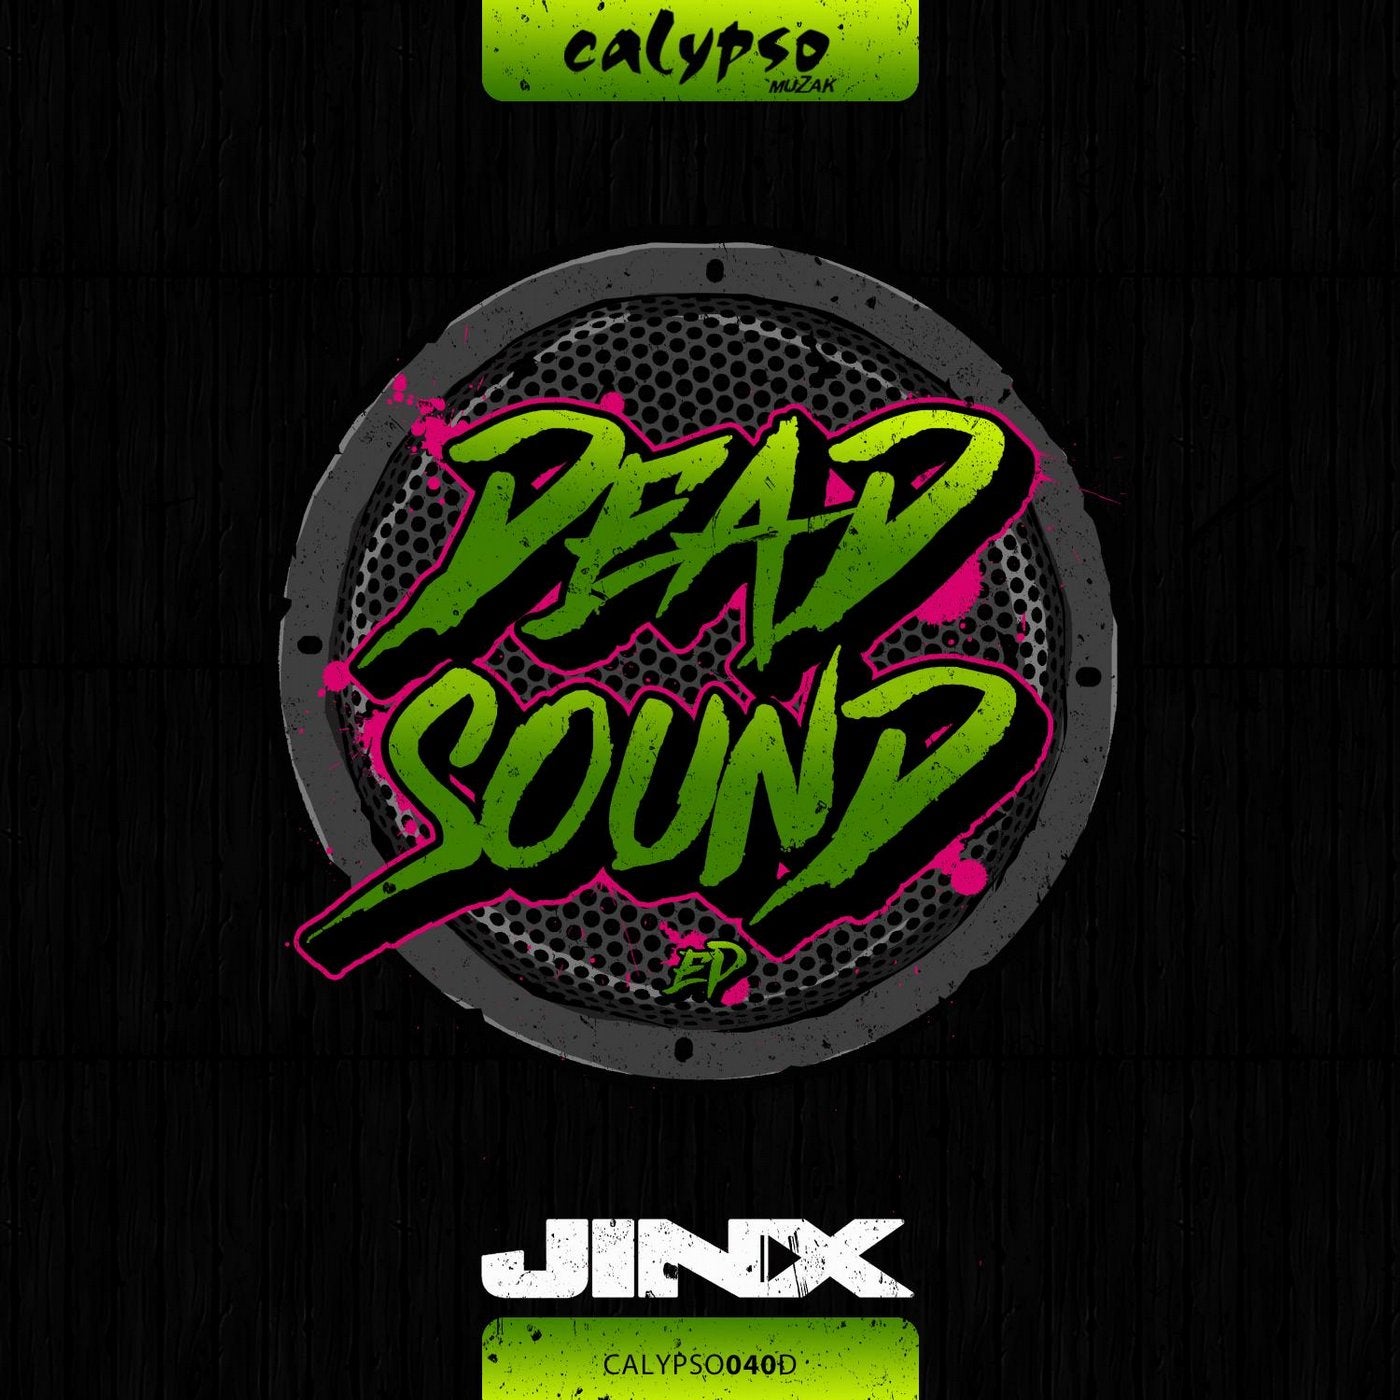 Dead Sound EP